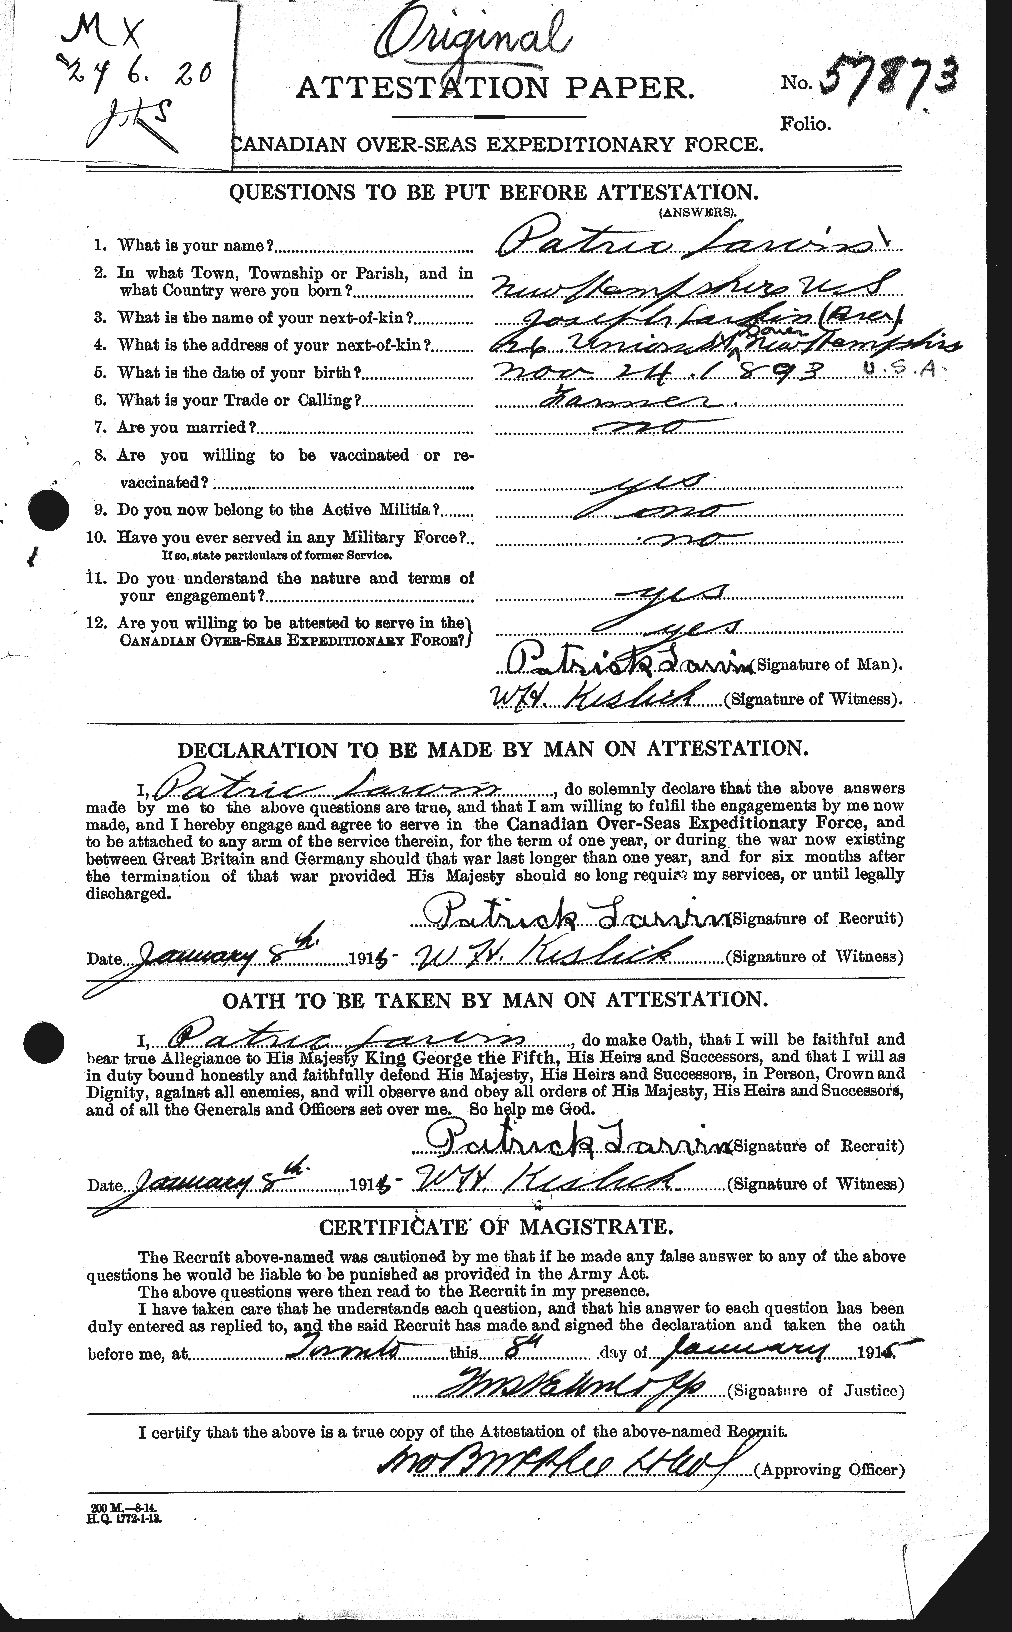 Dossiers du Personnel de la Première Guerre mondiale - CEC 451853a